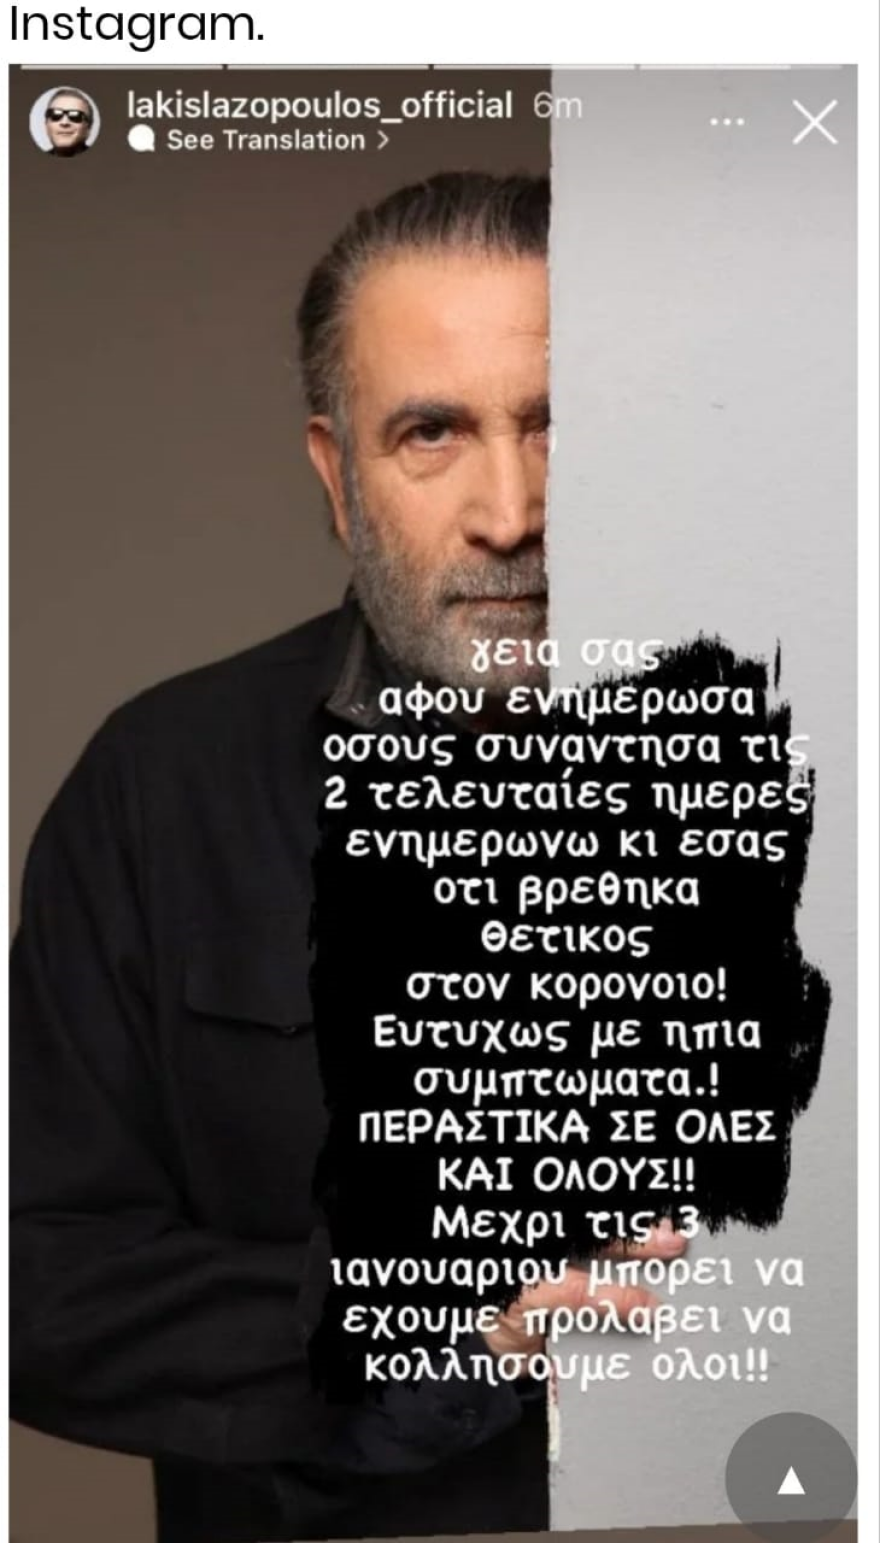 Λαζόπουλος, Θετικός στον κορωνοϊό ο Λαζόπουλος: Μέχρι τις 3 Ιανουαρίου μπορεί να έχουμε προλάβει να κολλήσουμε όλοι